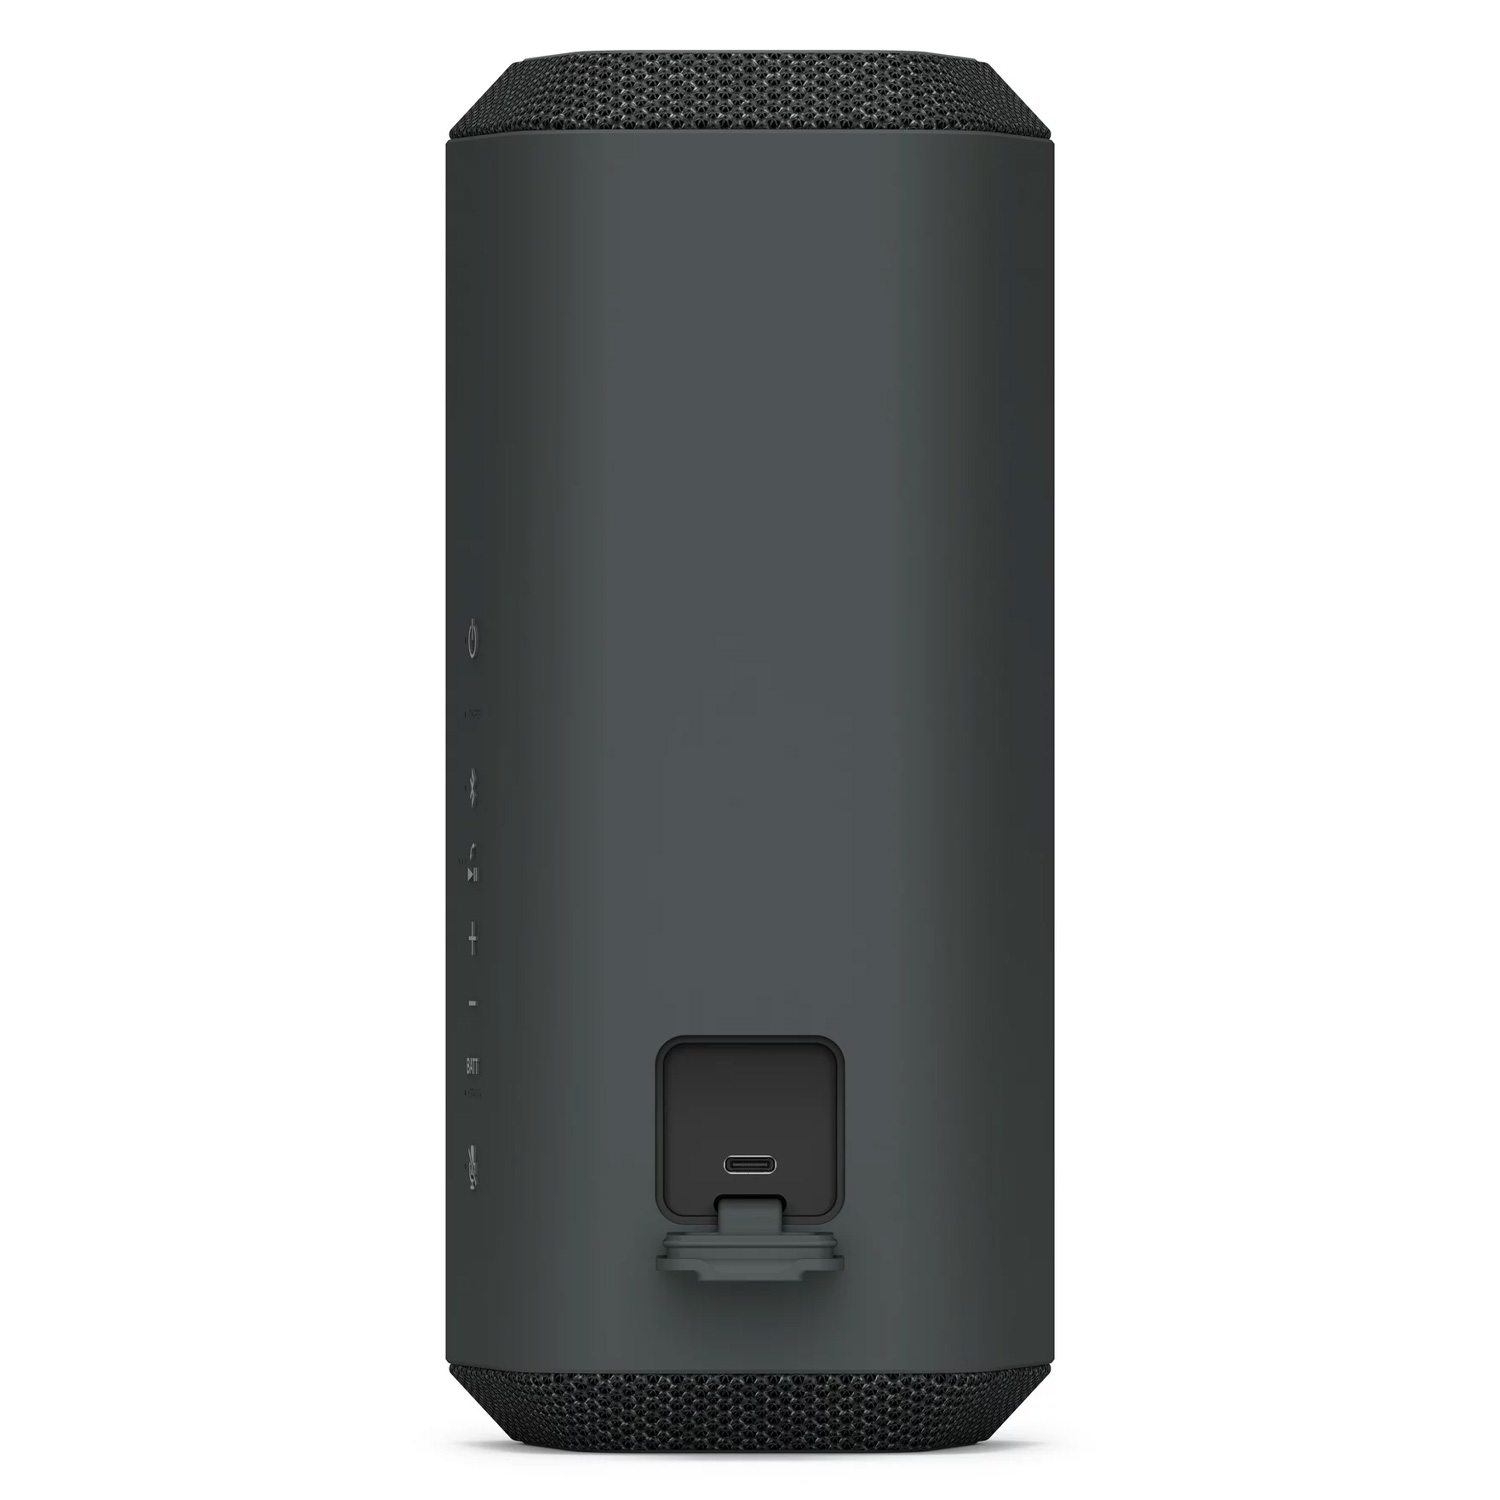 Caixa de Som Sony Portátil SRS-XE300 / Bluetooth - Preto